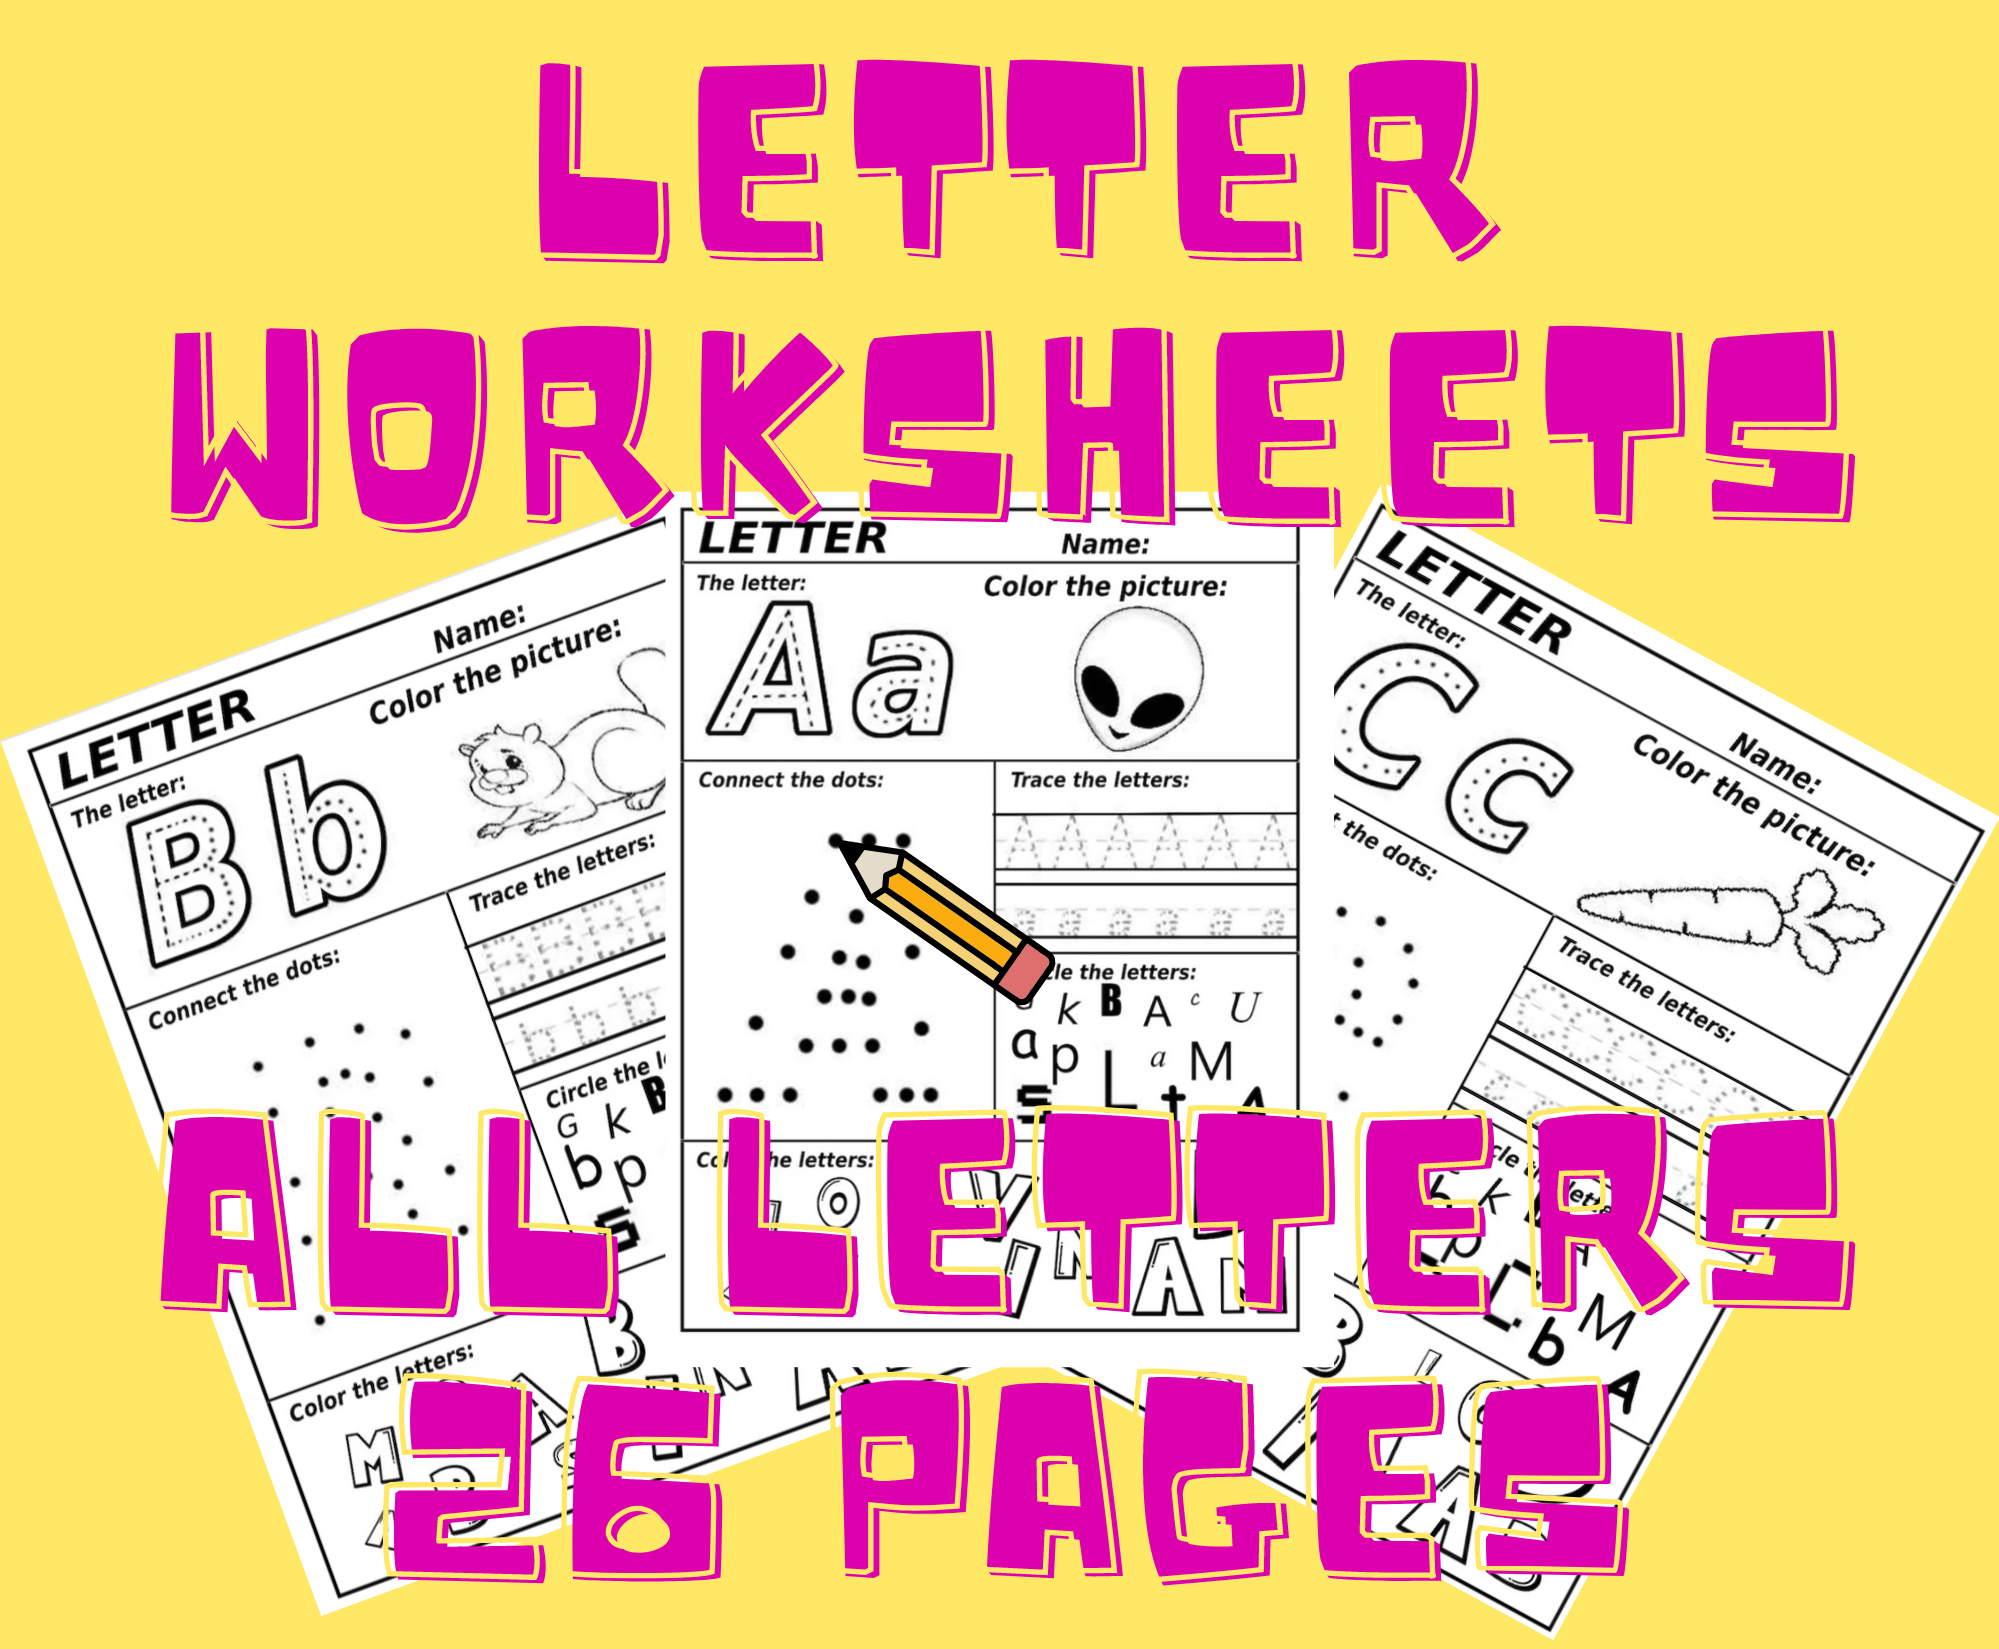 Letter worksheets for kindergarten